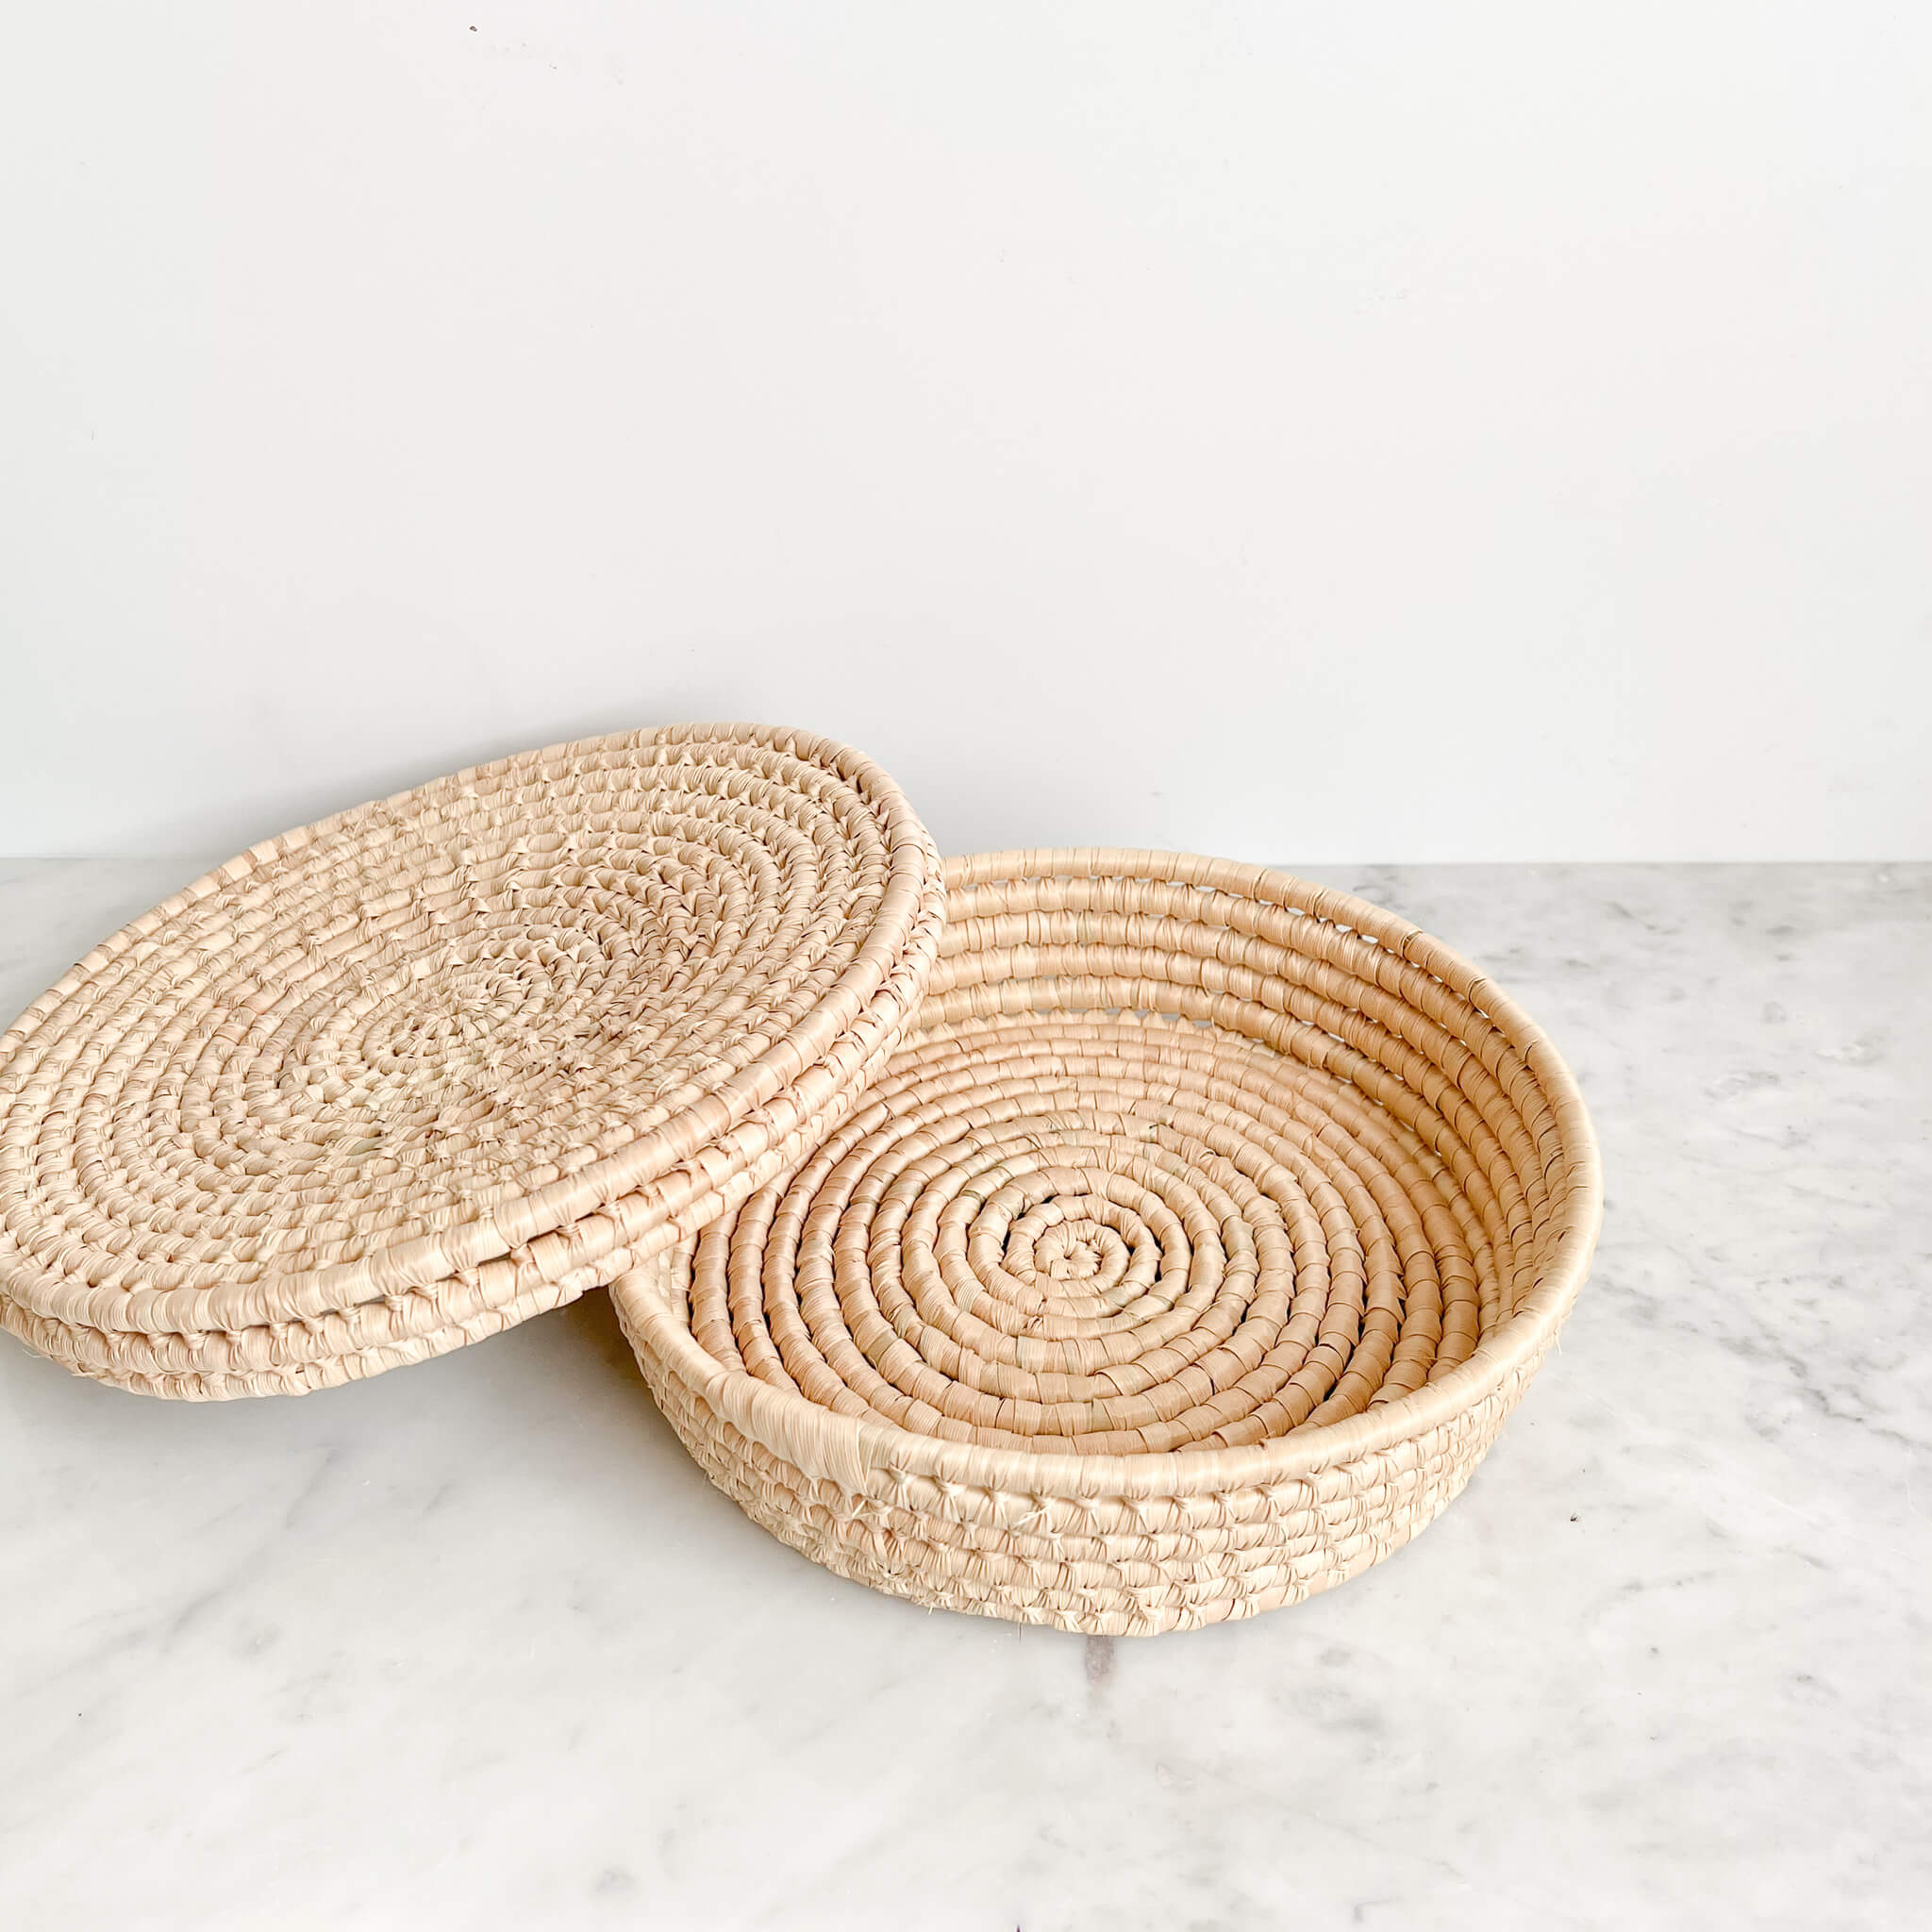 A tortillero tortilla basket handwoven in Baja, Mexico on a white marble counter.